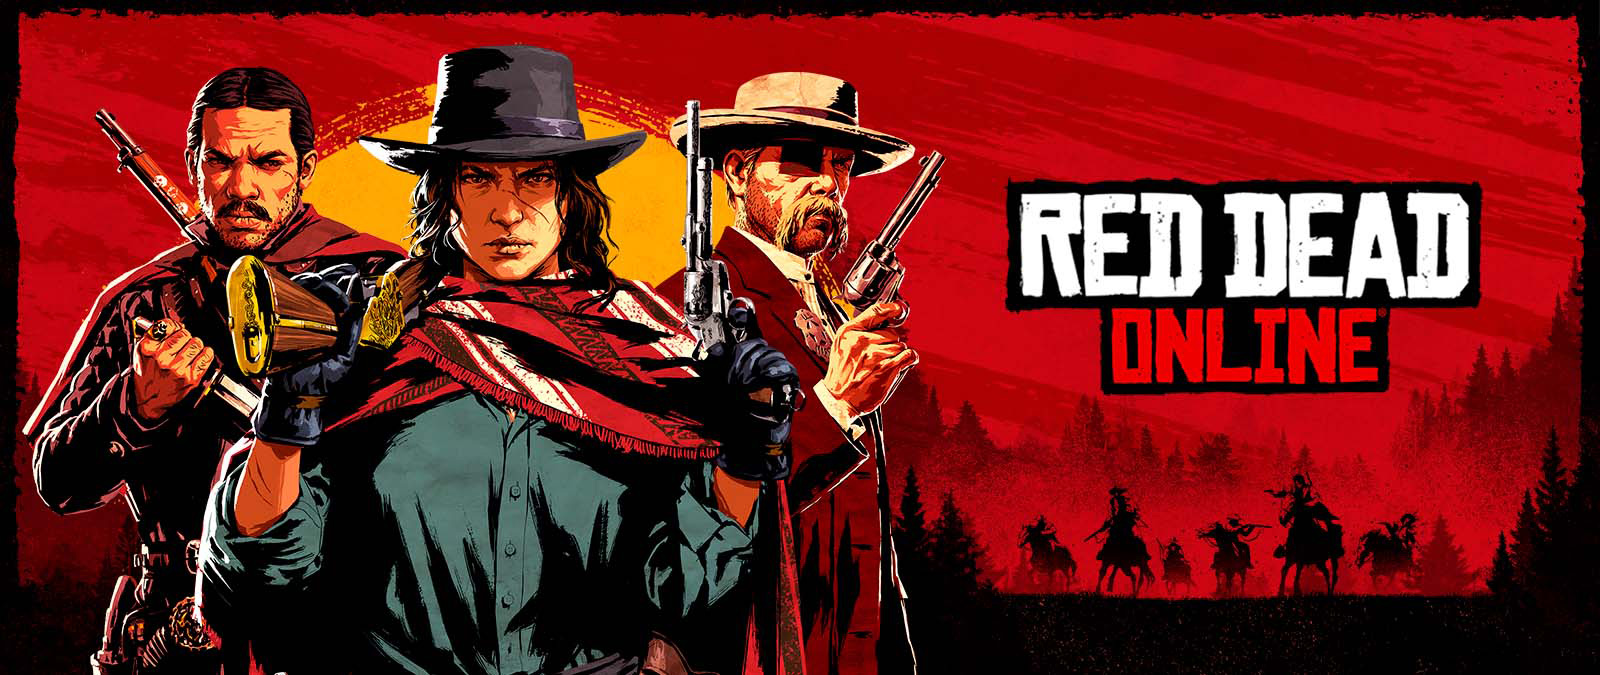 Red Dead Online. Tres personajes con armas frente a una puesta de sol y sombras de otros personajes a caballo.